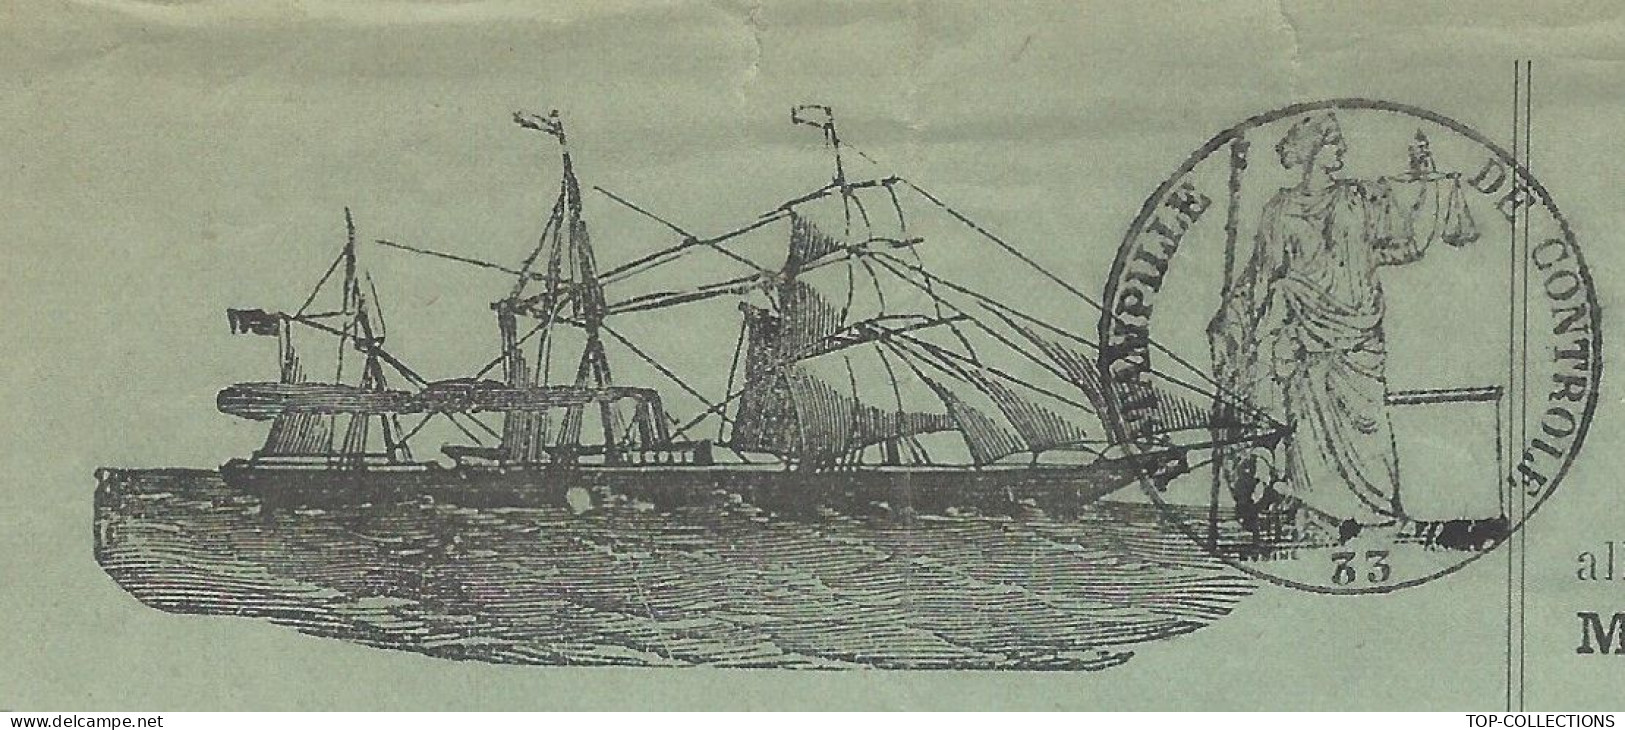 1884 CONNAISSEMENT BILL OF LADING Ligne Régulière De Bateaux à Vapeur De Bordeaux  Pour Le Havre  Barriques Vin  V.SCANS - 1800 – 1899